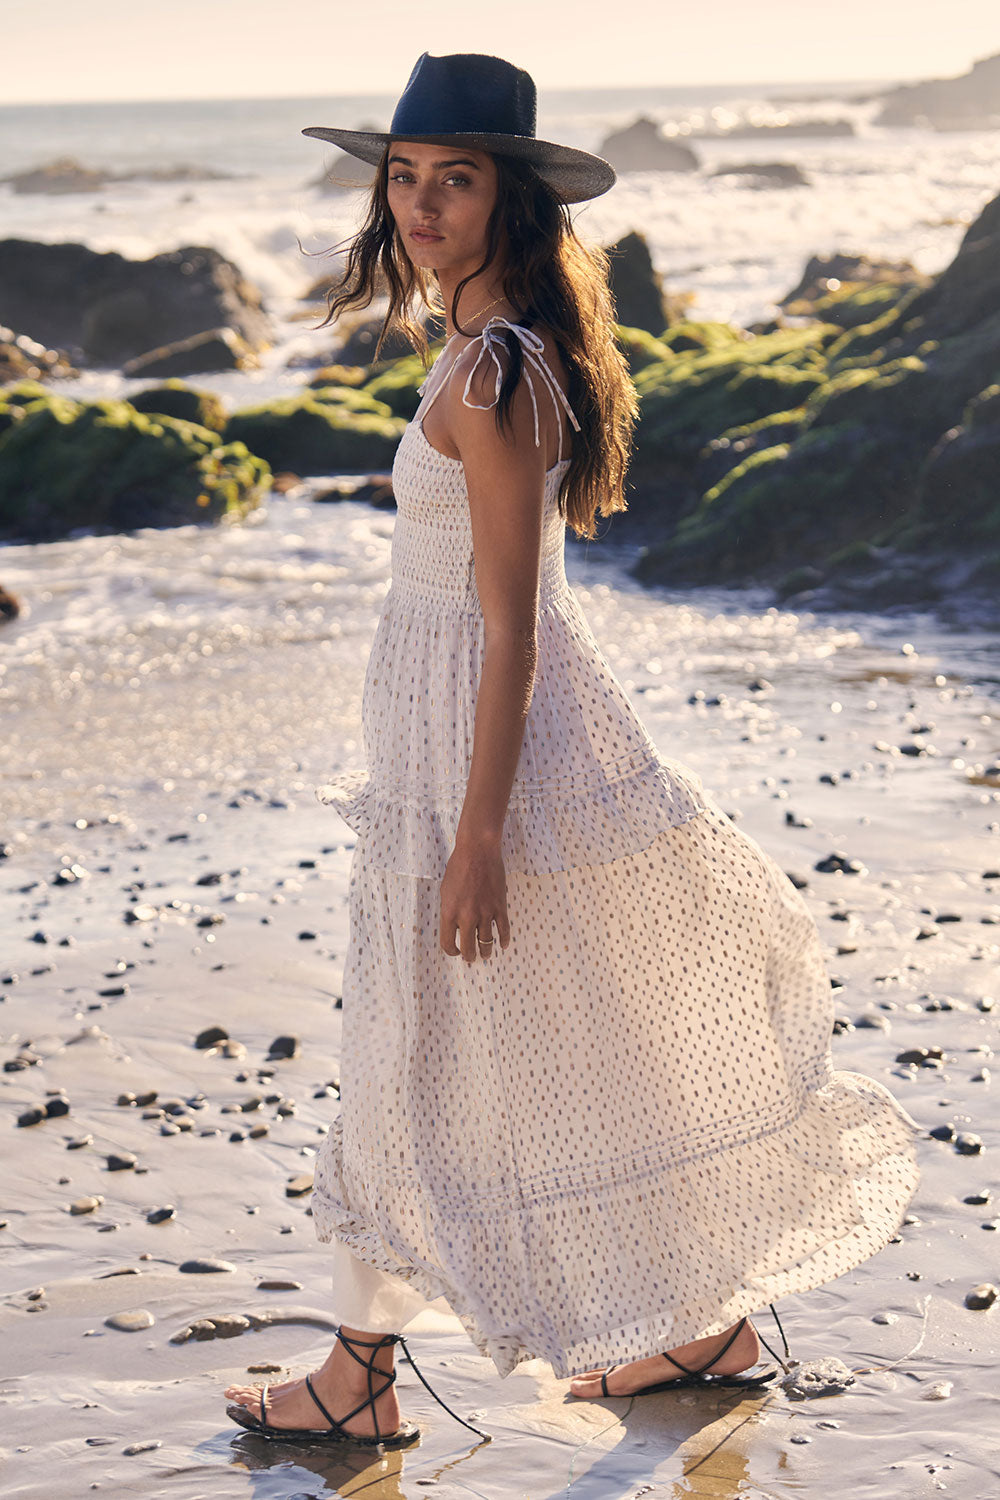 Tatiana Midi Dress - Saltwater Luxe